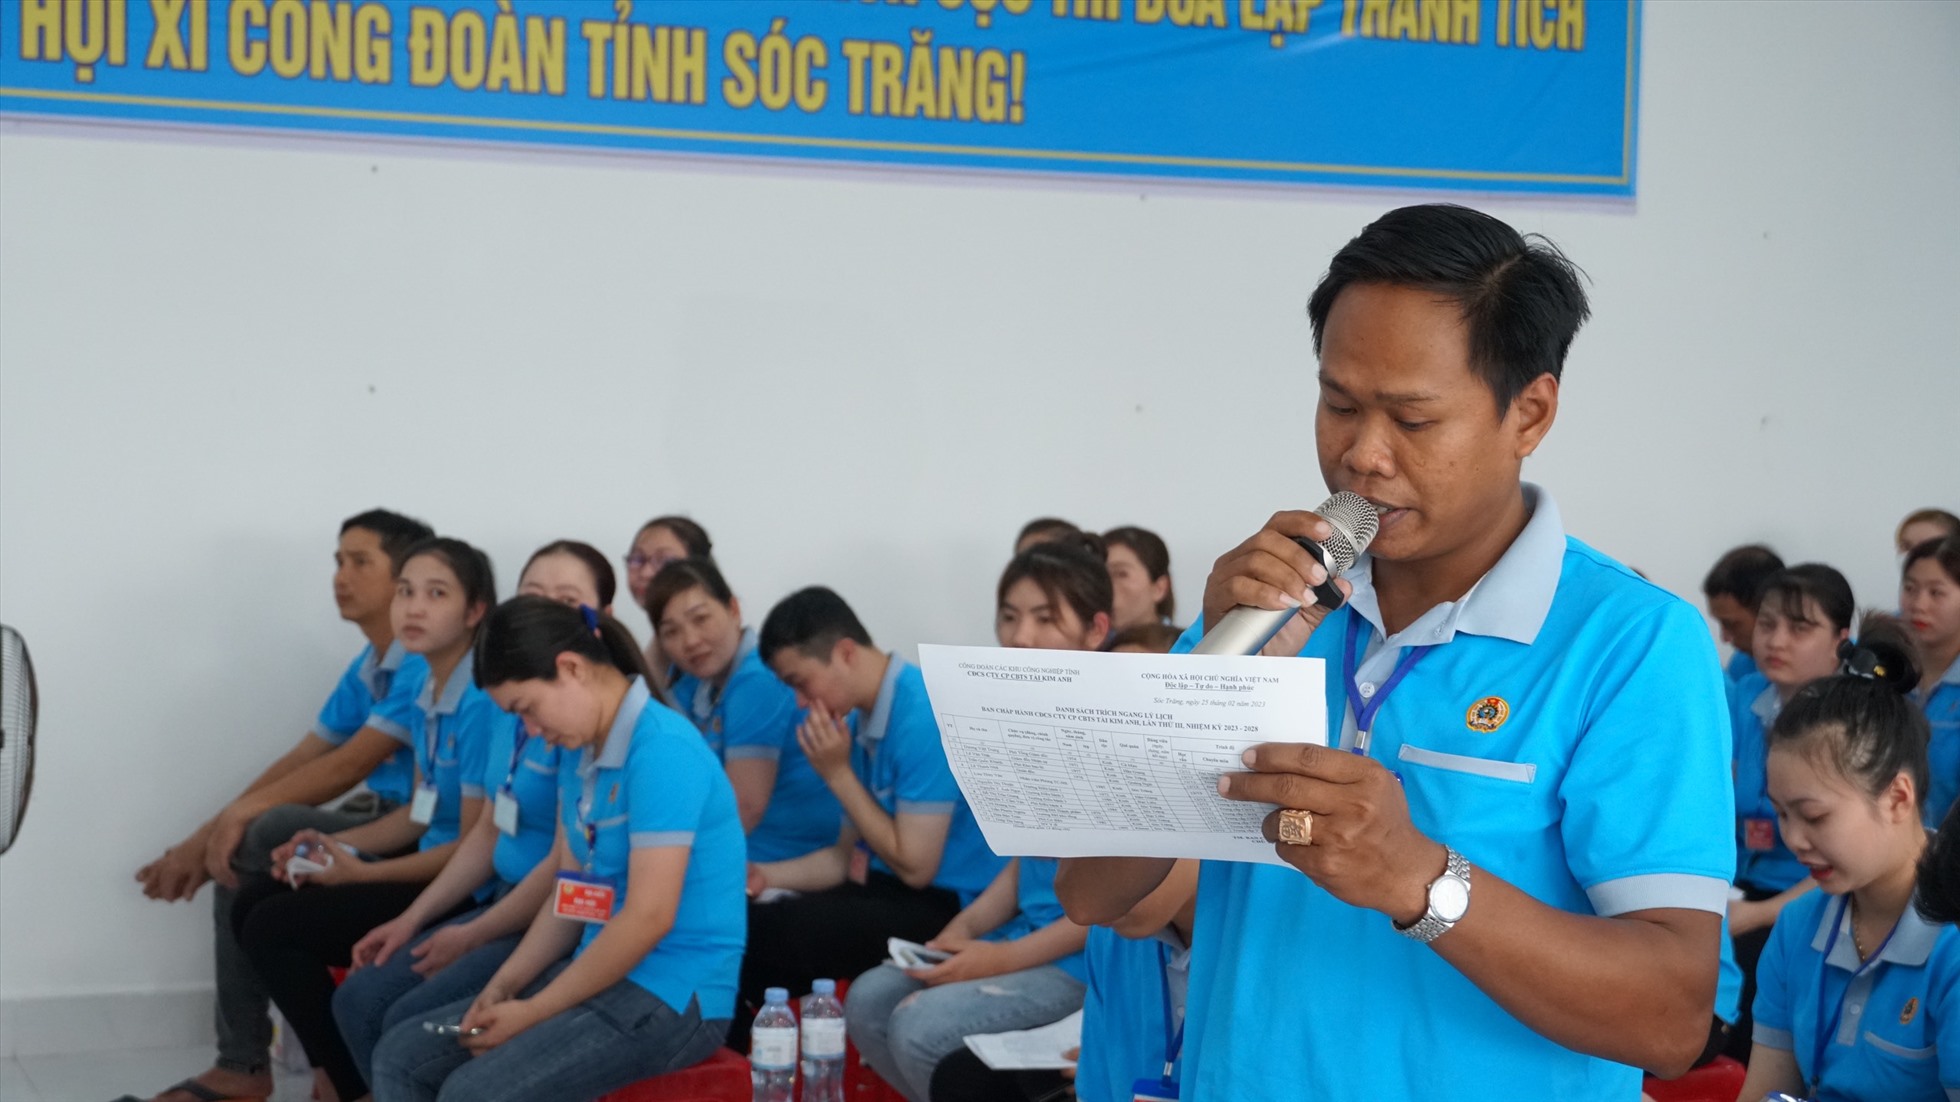 Đoàn viên Lâm Thanh Hùng đóng góp ý kiến về hỗ trợ “Mái ấm Công đoàn” cho đoàn viên, công nhân lao động. Ảnh: Anh Khoa